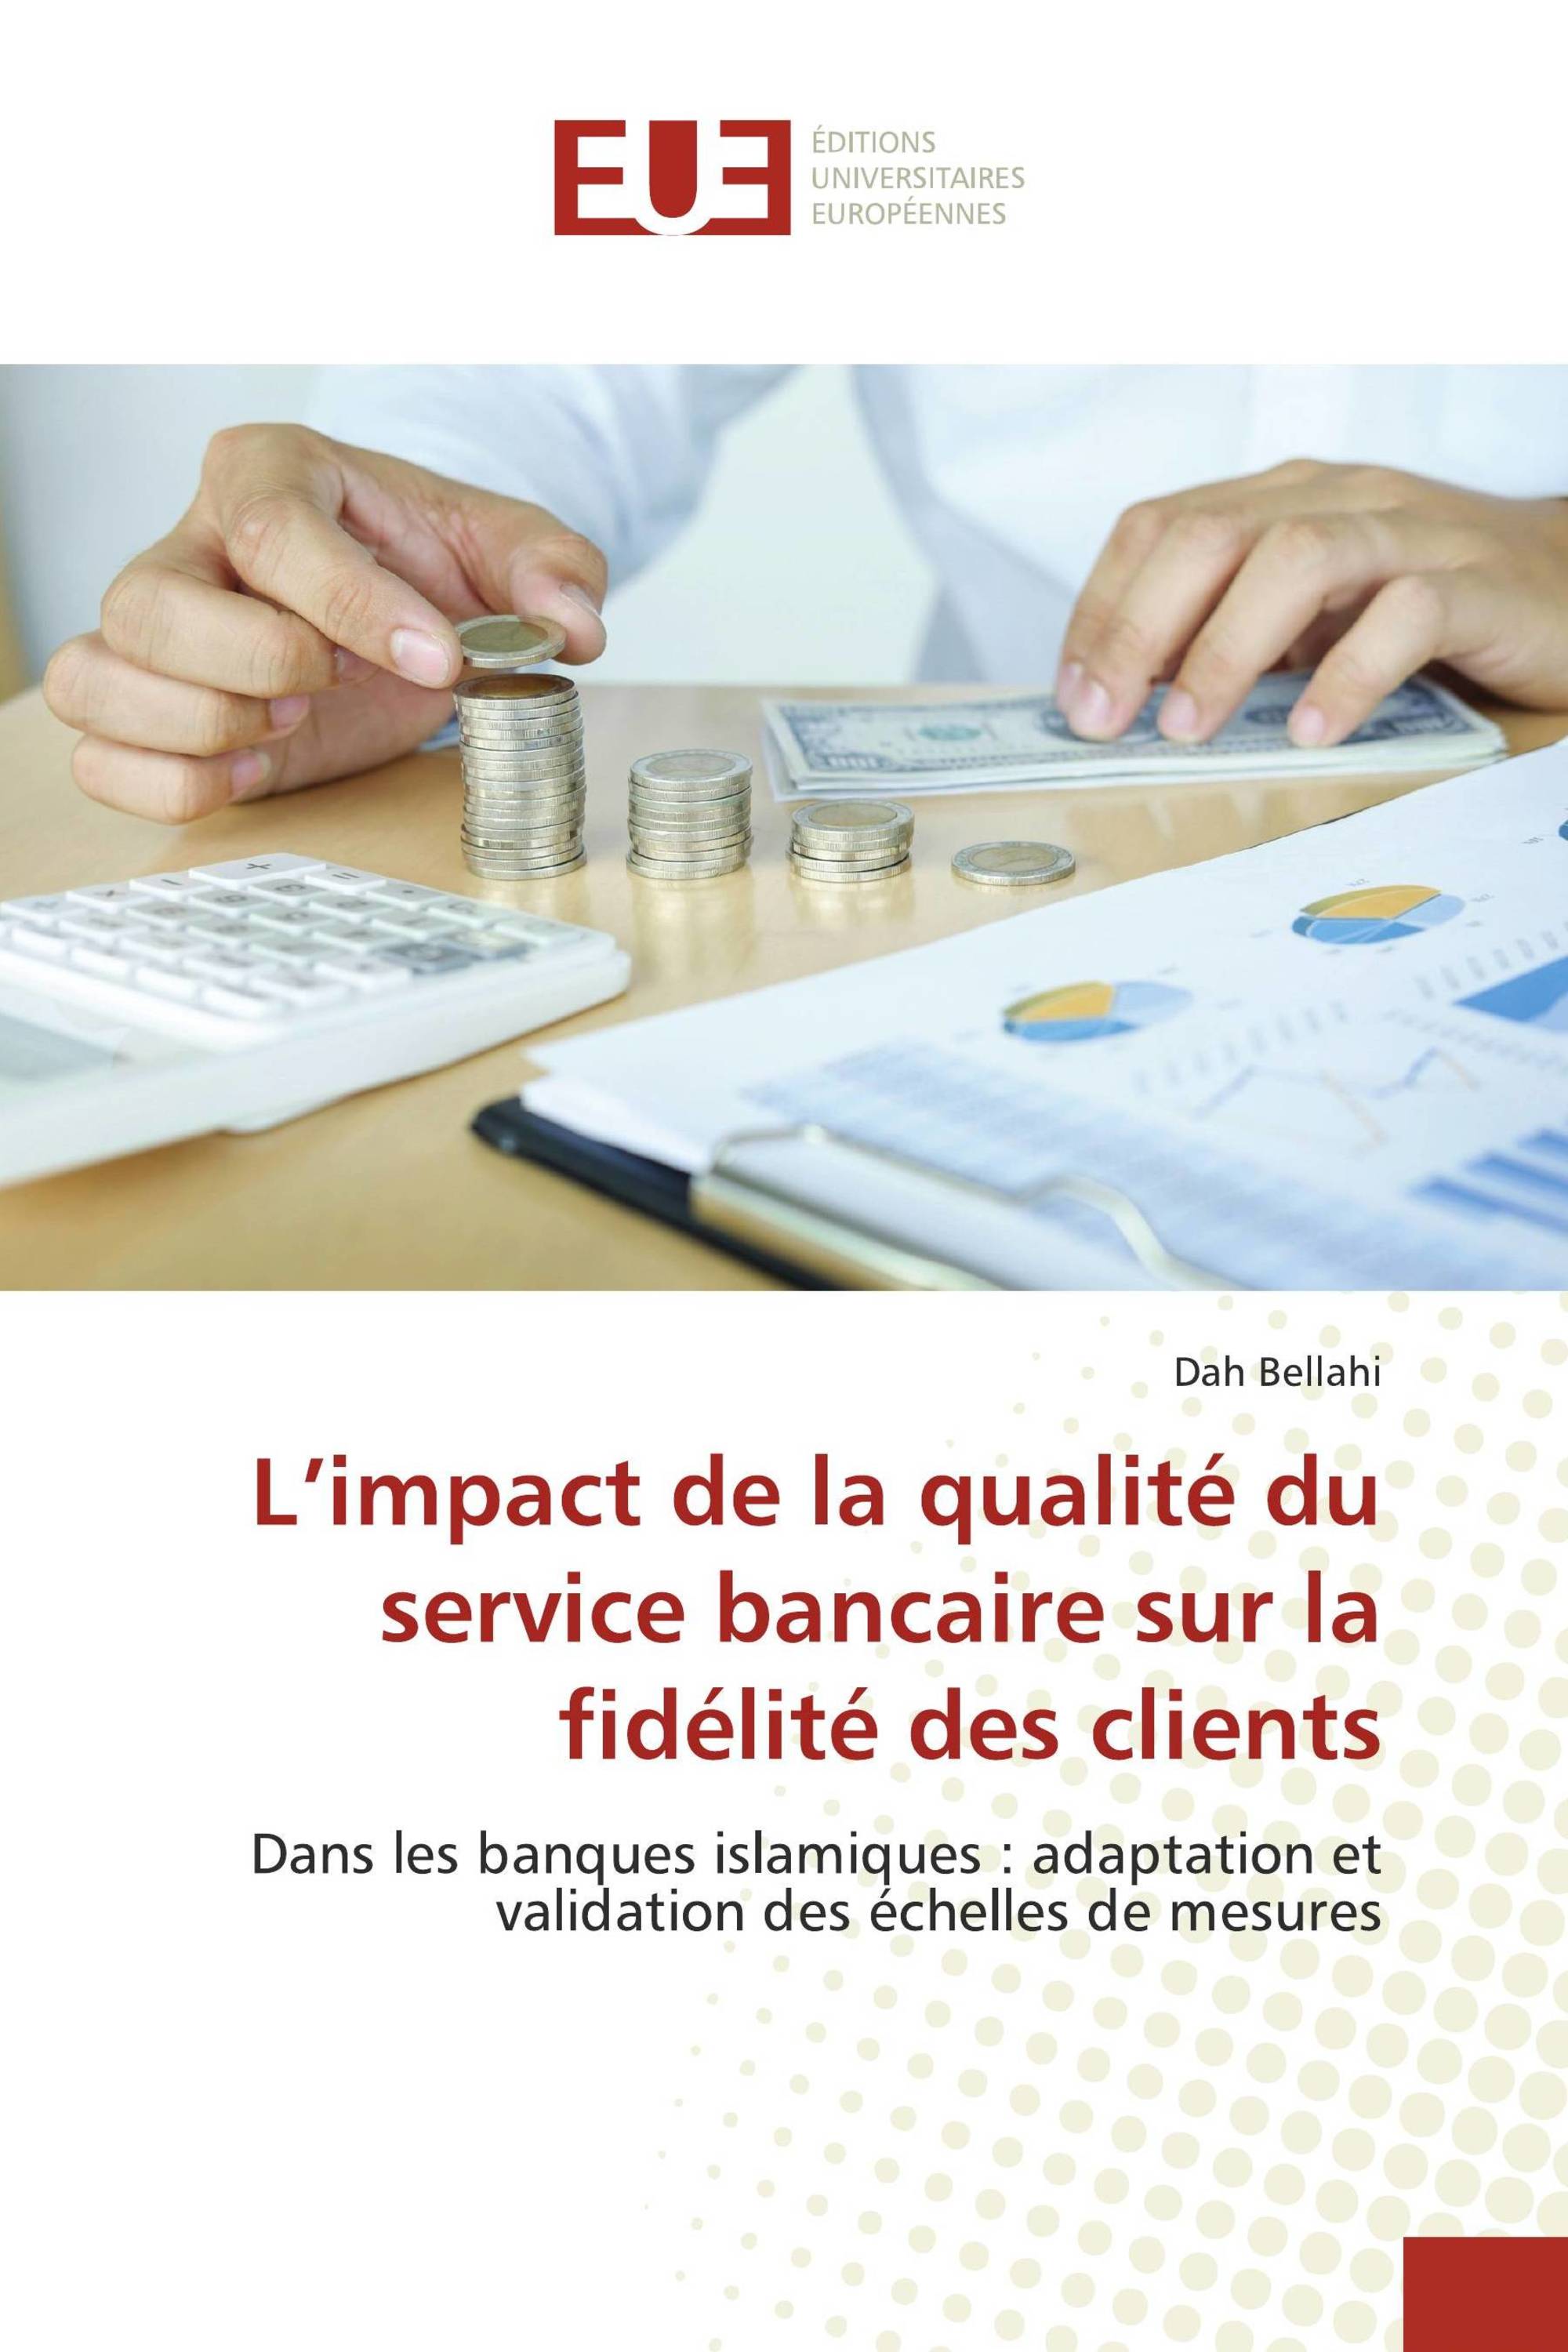 L’impact de la qualité du service bancaire sur la fidélité des clients